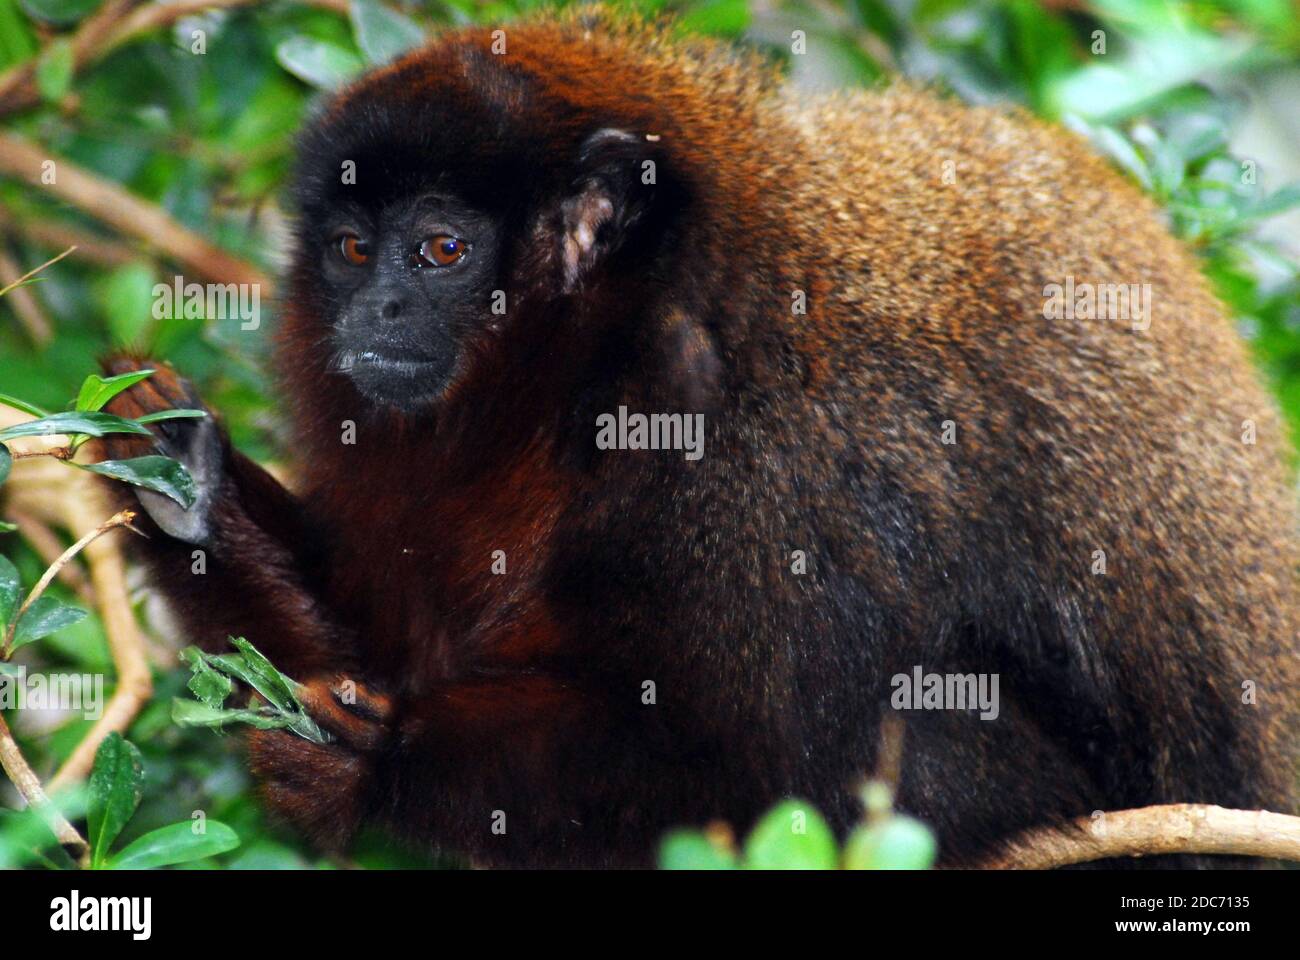 Scimmia Titi rossa conosciuta anche come titi coppery (Plecturocebus cutreus anche Callicebus cutreus) Un tipo di primate del nuovo mondo in via di estinzione dal Sud America Foto Stock